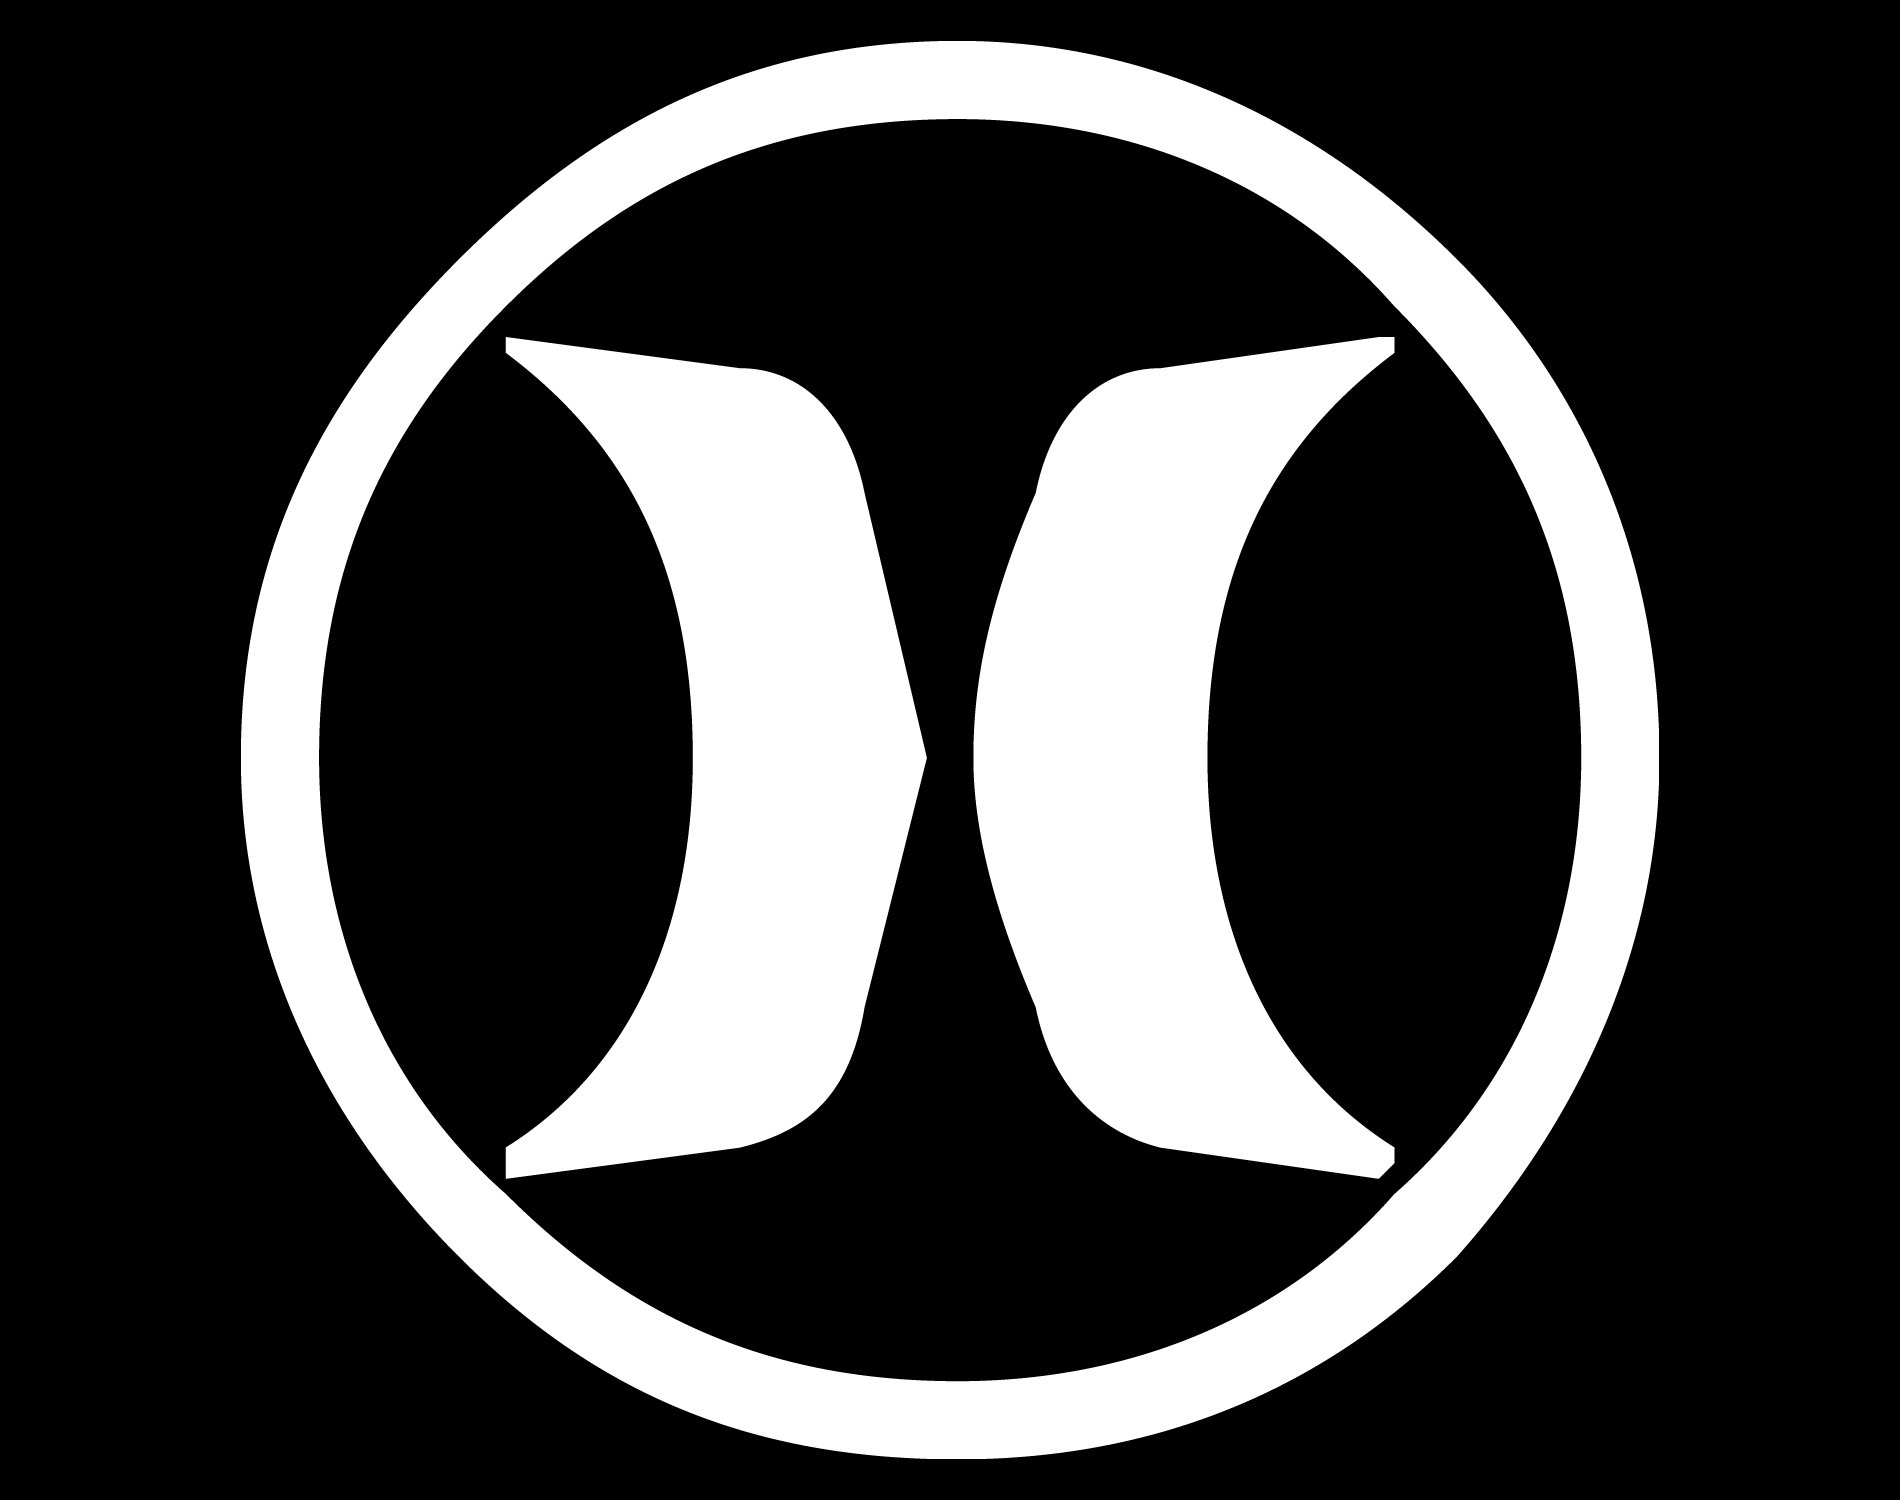 rammelaar residentie paddestoel Hurley Logo and symbol, meaning, history, PNG, brand